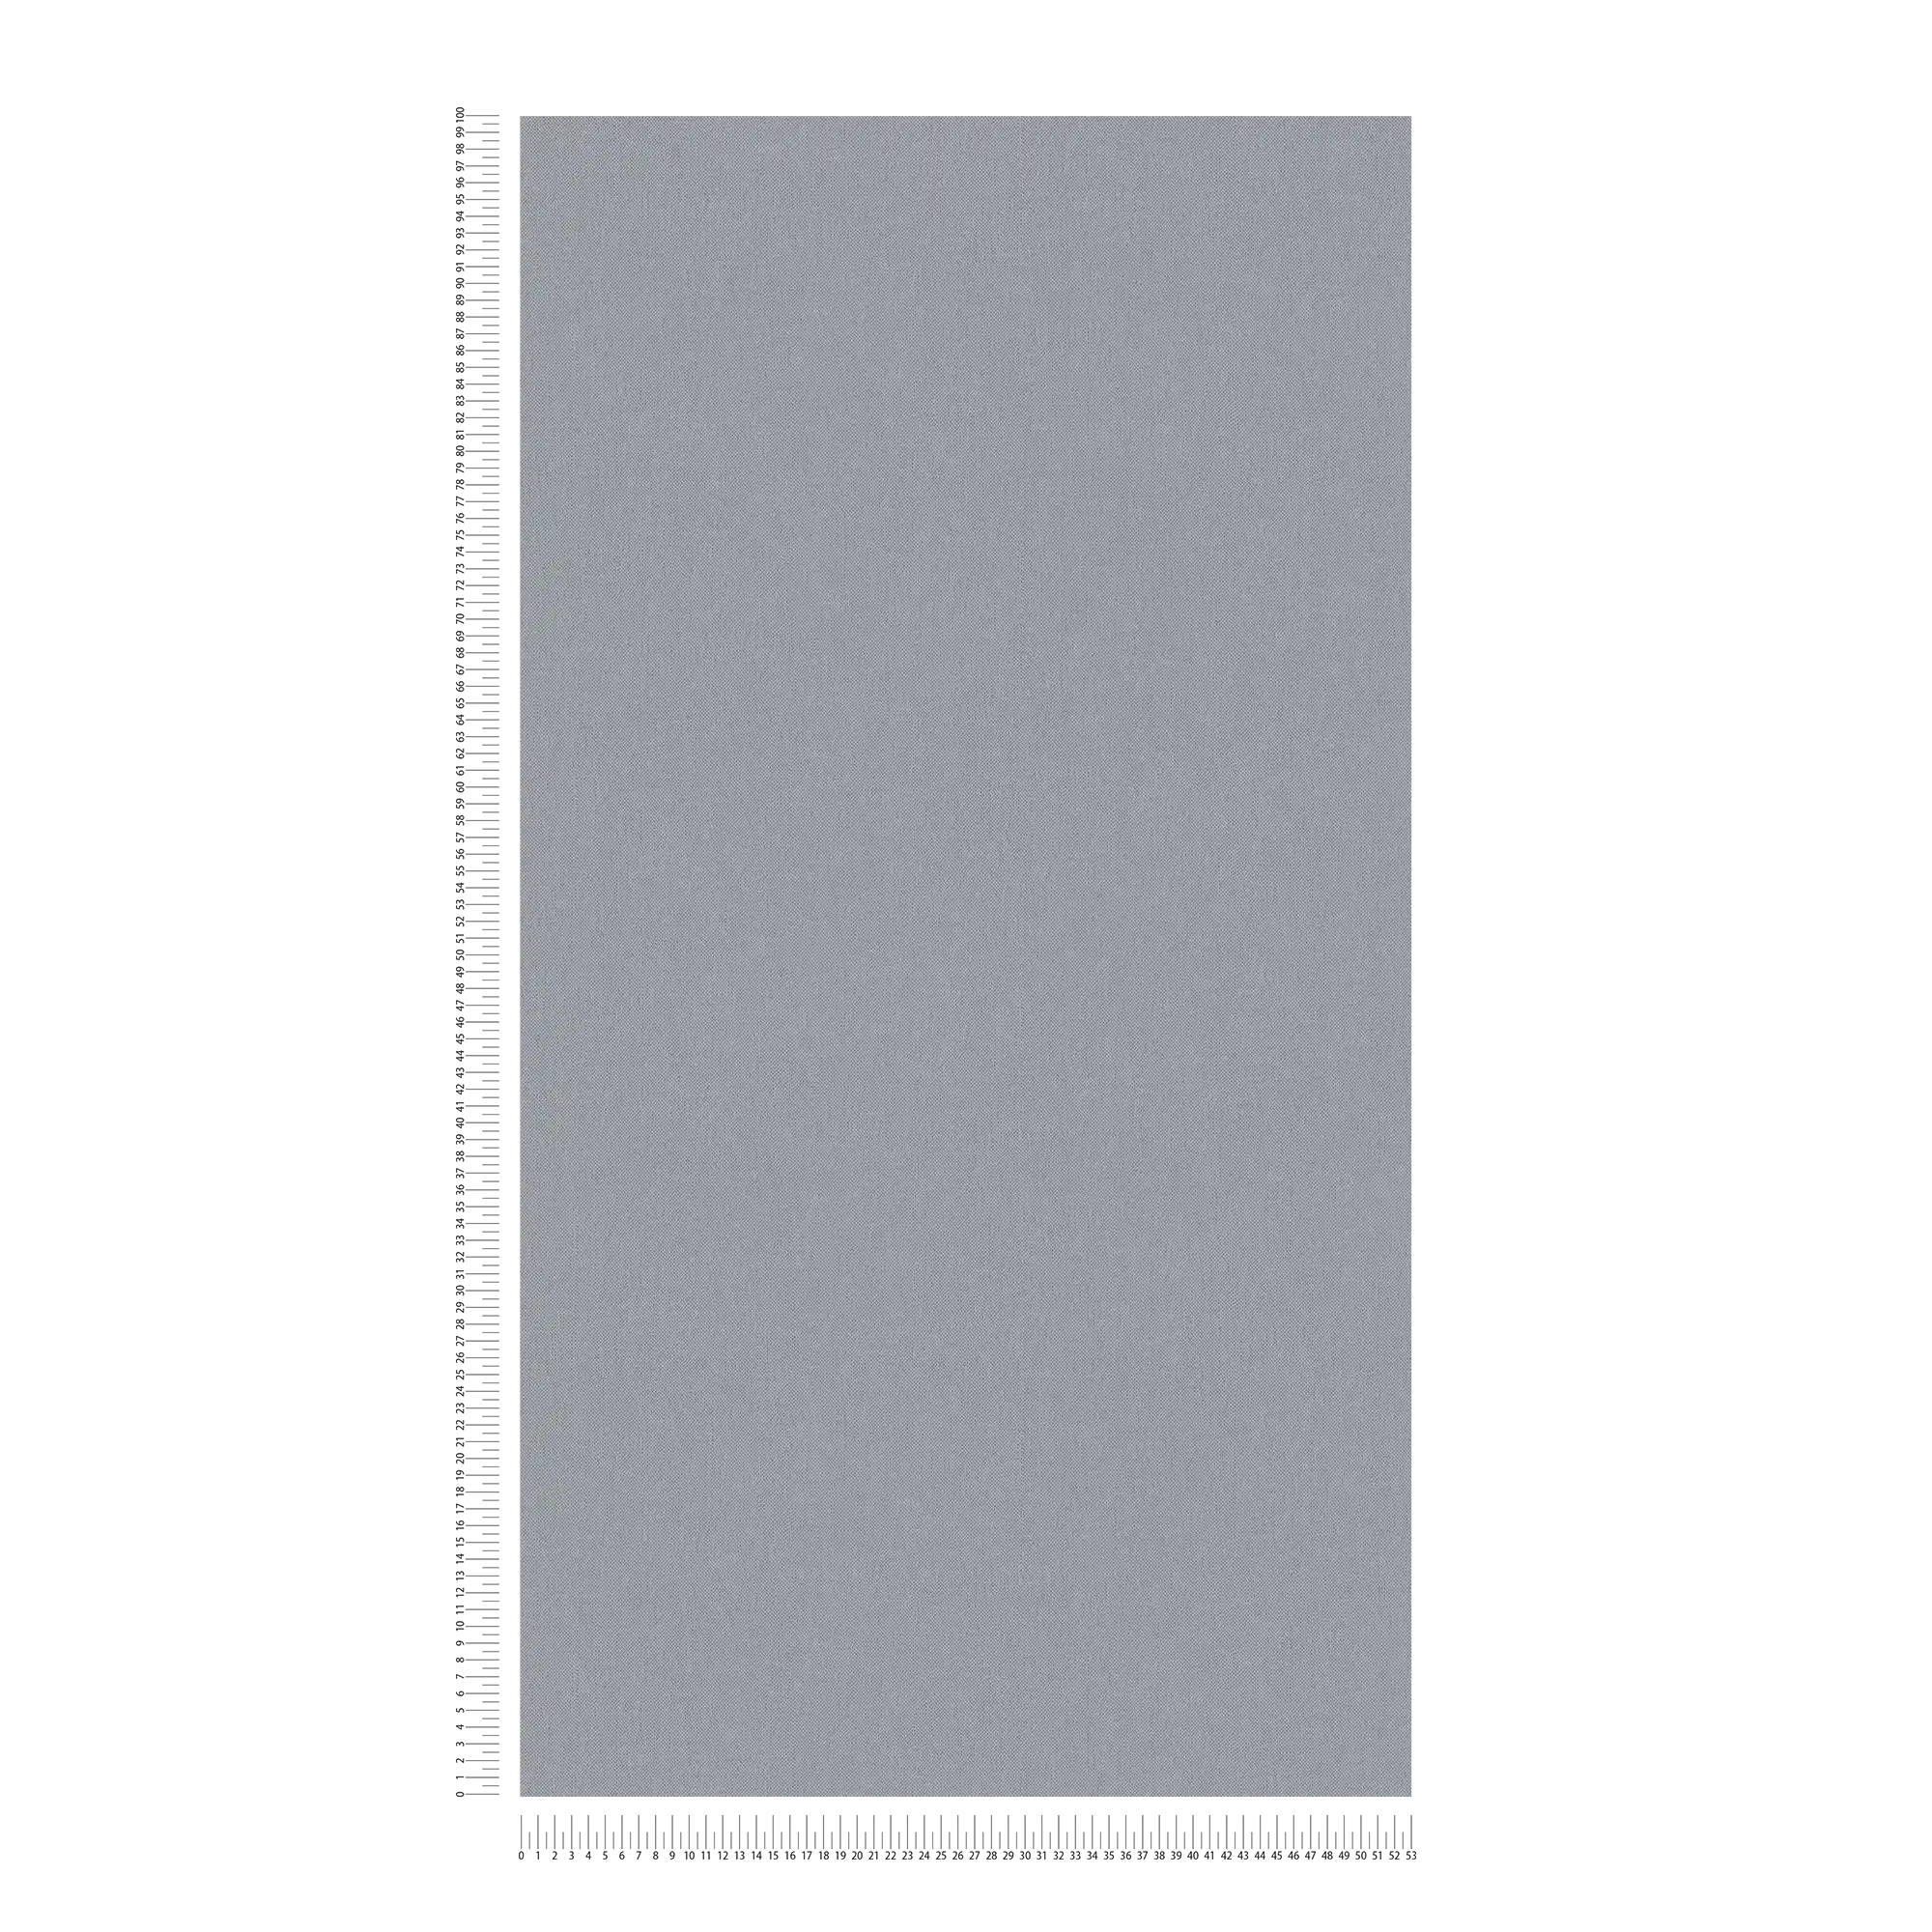             Carta da parati in lino grigio con struttura in tessuto e superficie opaca
        